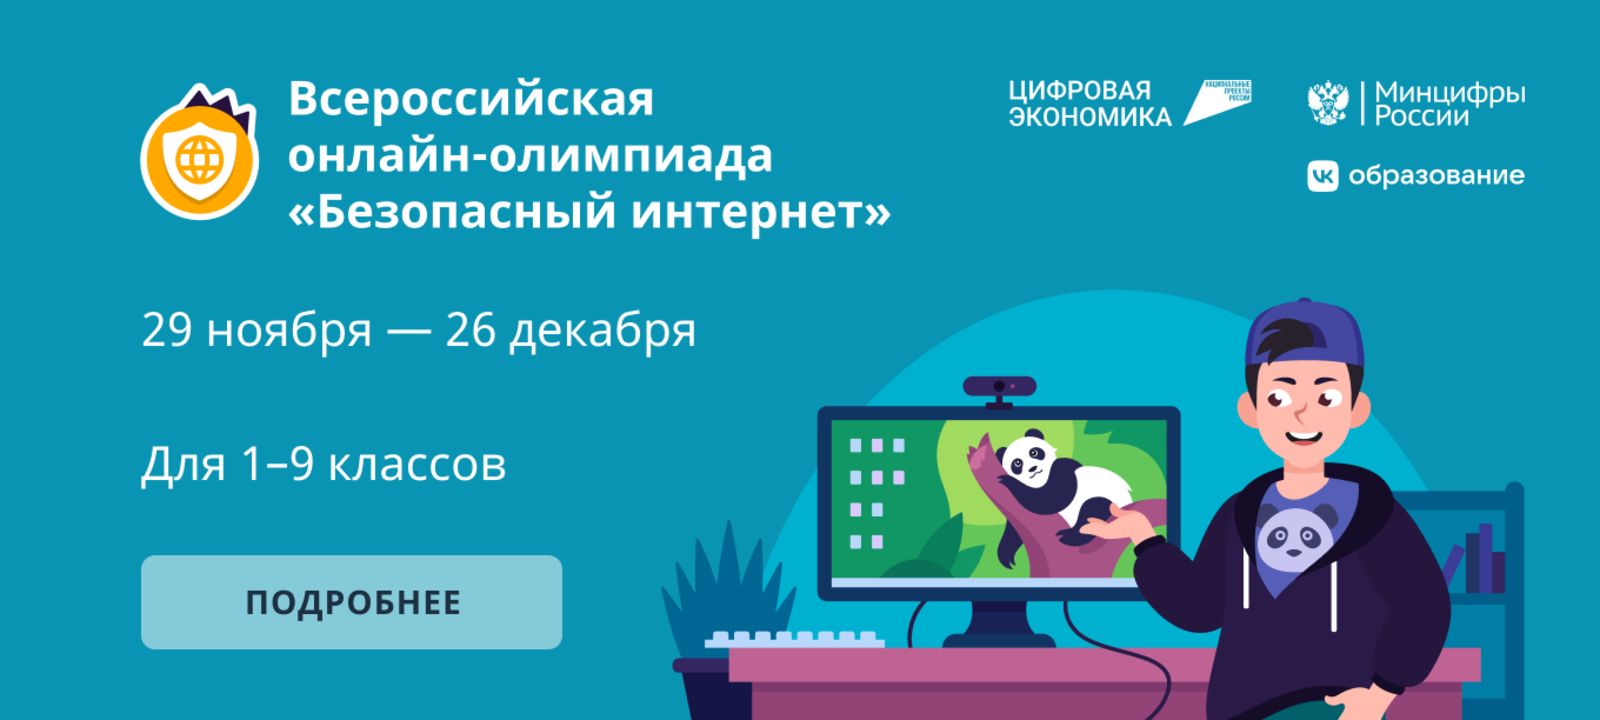 Всероссийская онлайн-олимпиада для школьников  «Безопасный интернет».